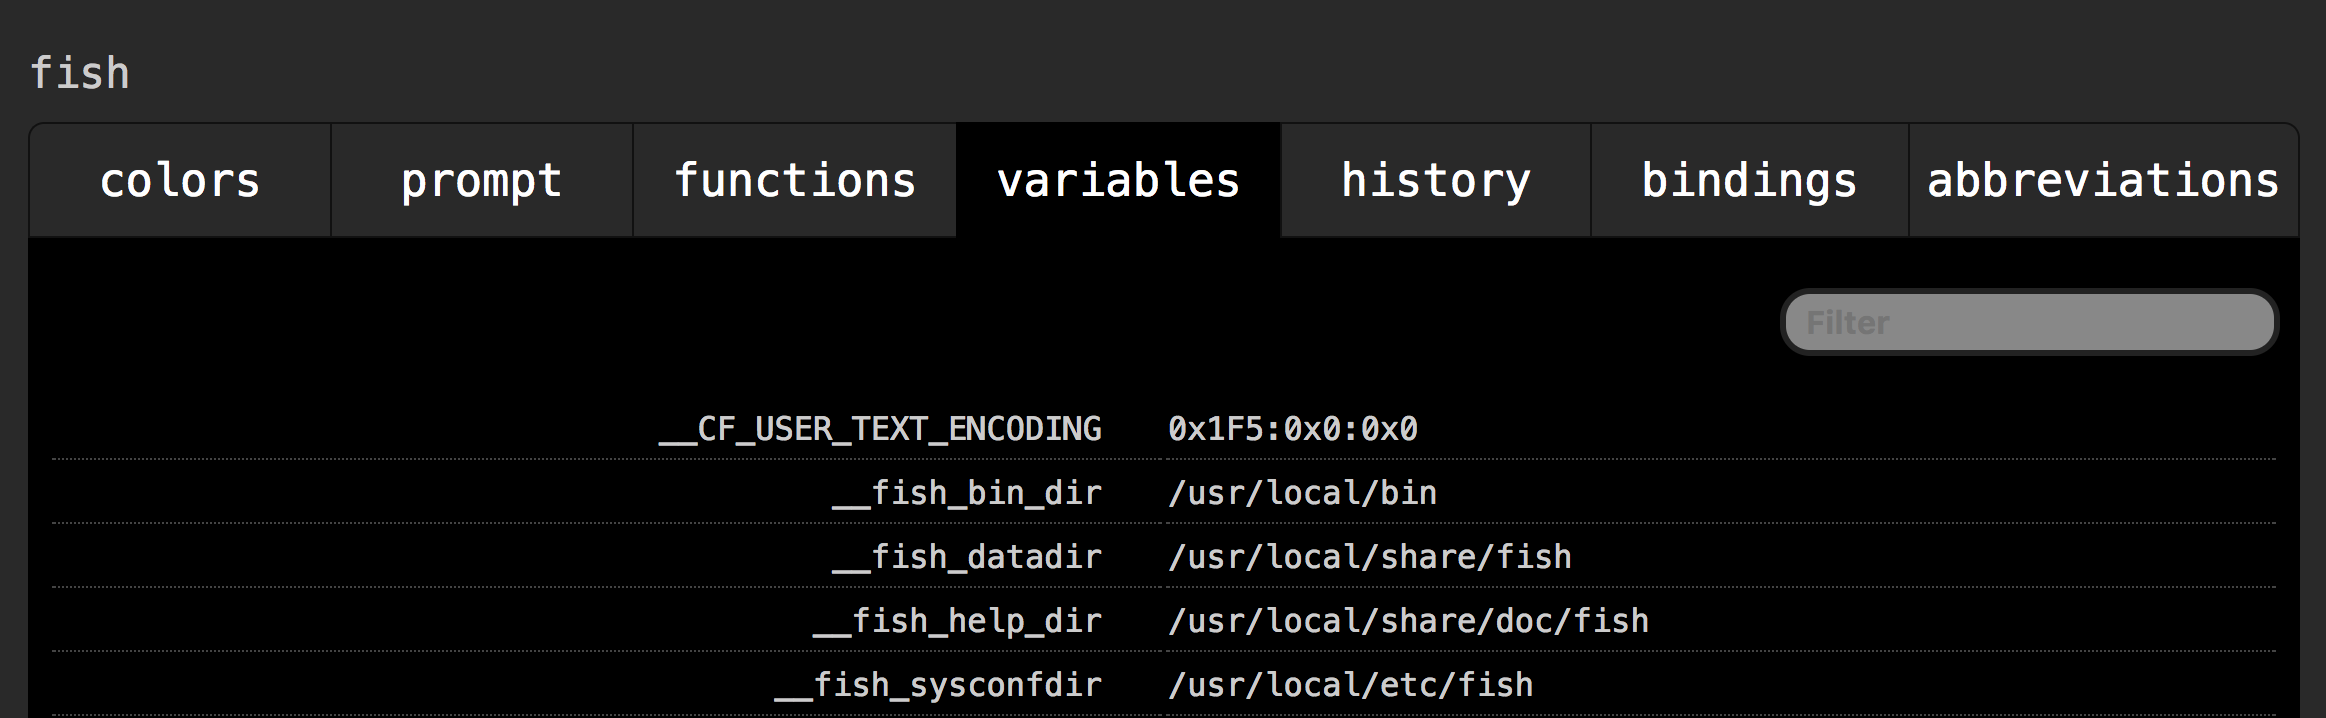 variables config screenshot